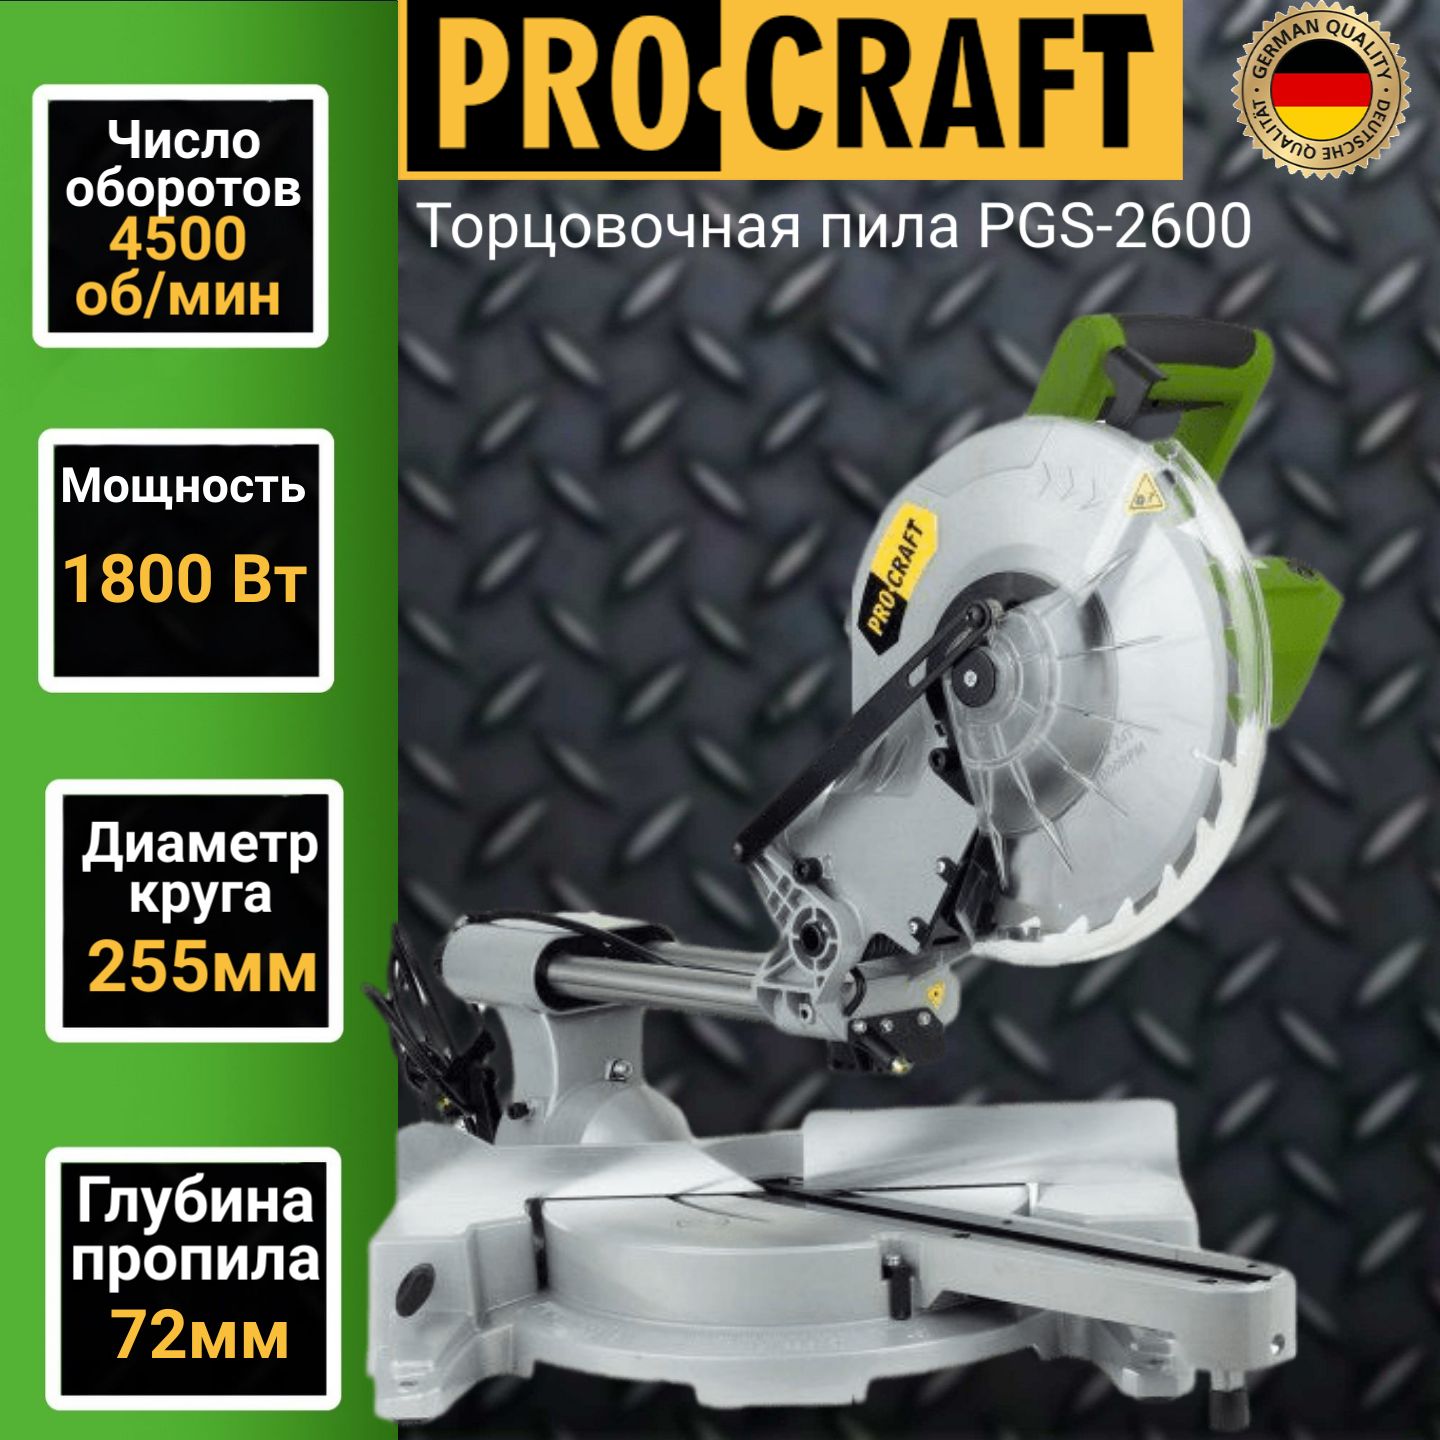 Пила торцовочная настольная Procraft PGS-2600, круг 255мм, 2600Вт, 4500об/мин